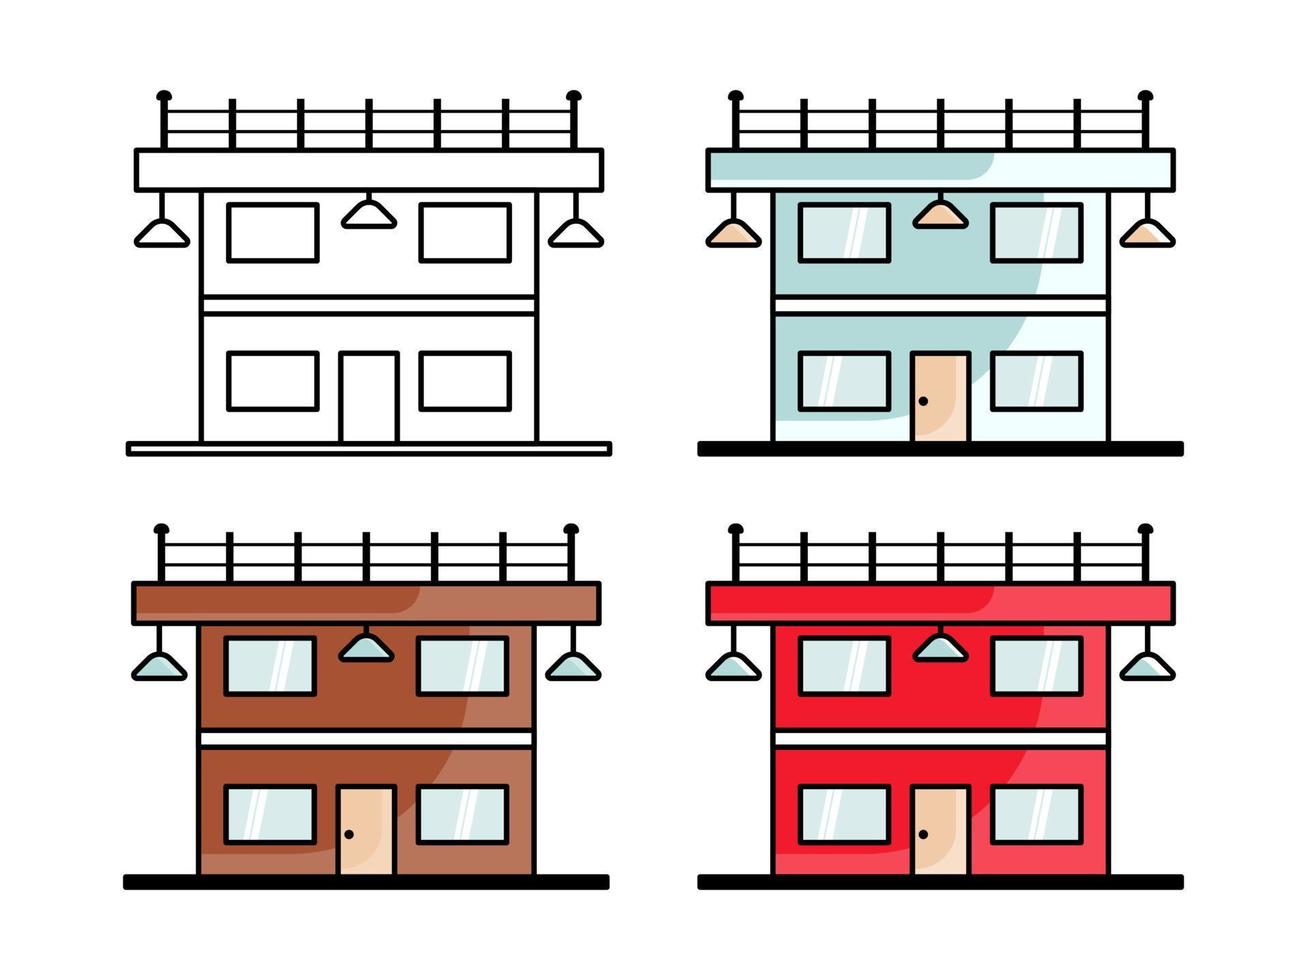 la conception graphique du bâtiment avec plusieurs couleurs convient pour compléter les besoins de conception tels que l'utilisation comme magasin ou autre chose vecteur